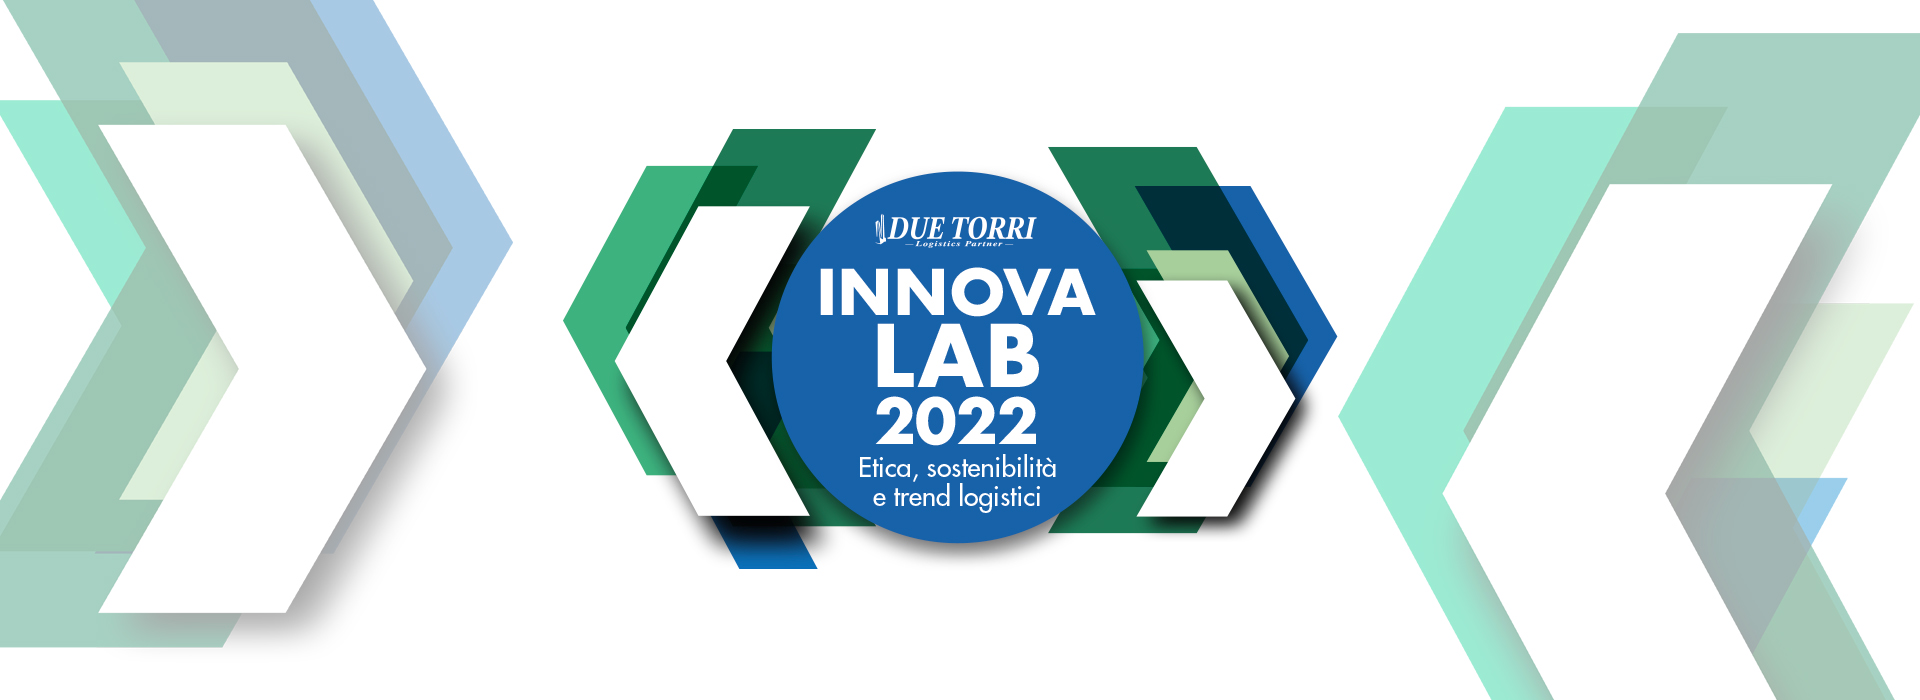 Innova Lab Due Torri logo designed by ATC